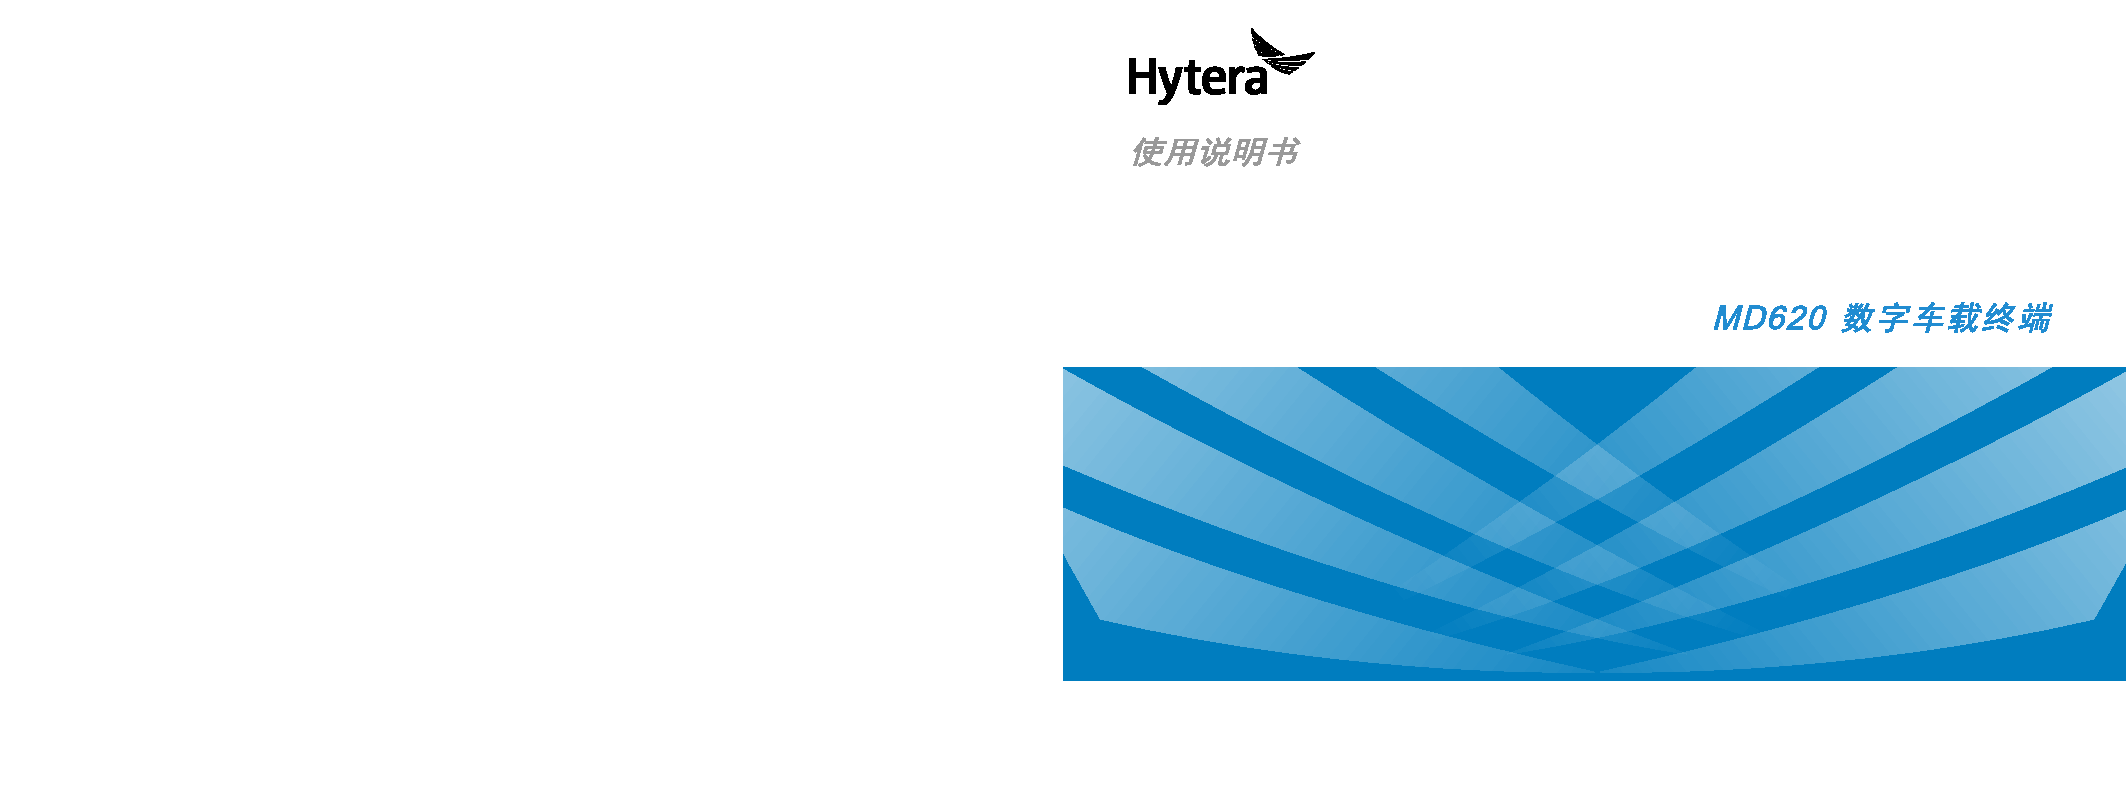 海能达 Hytera MD620 使用说明书 封面